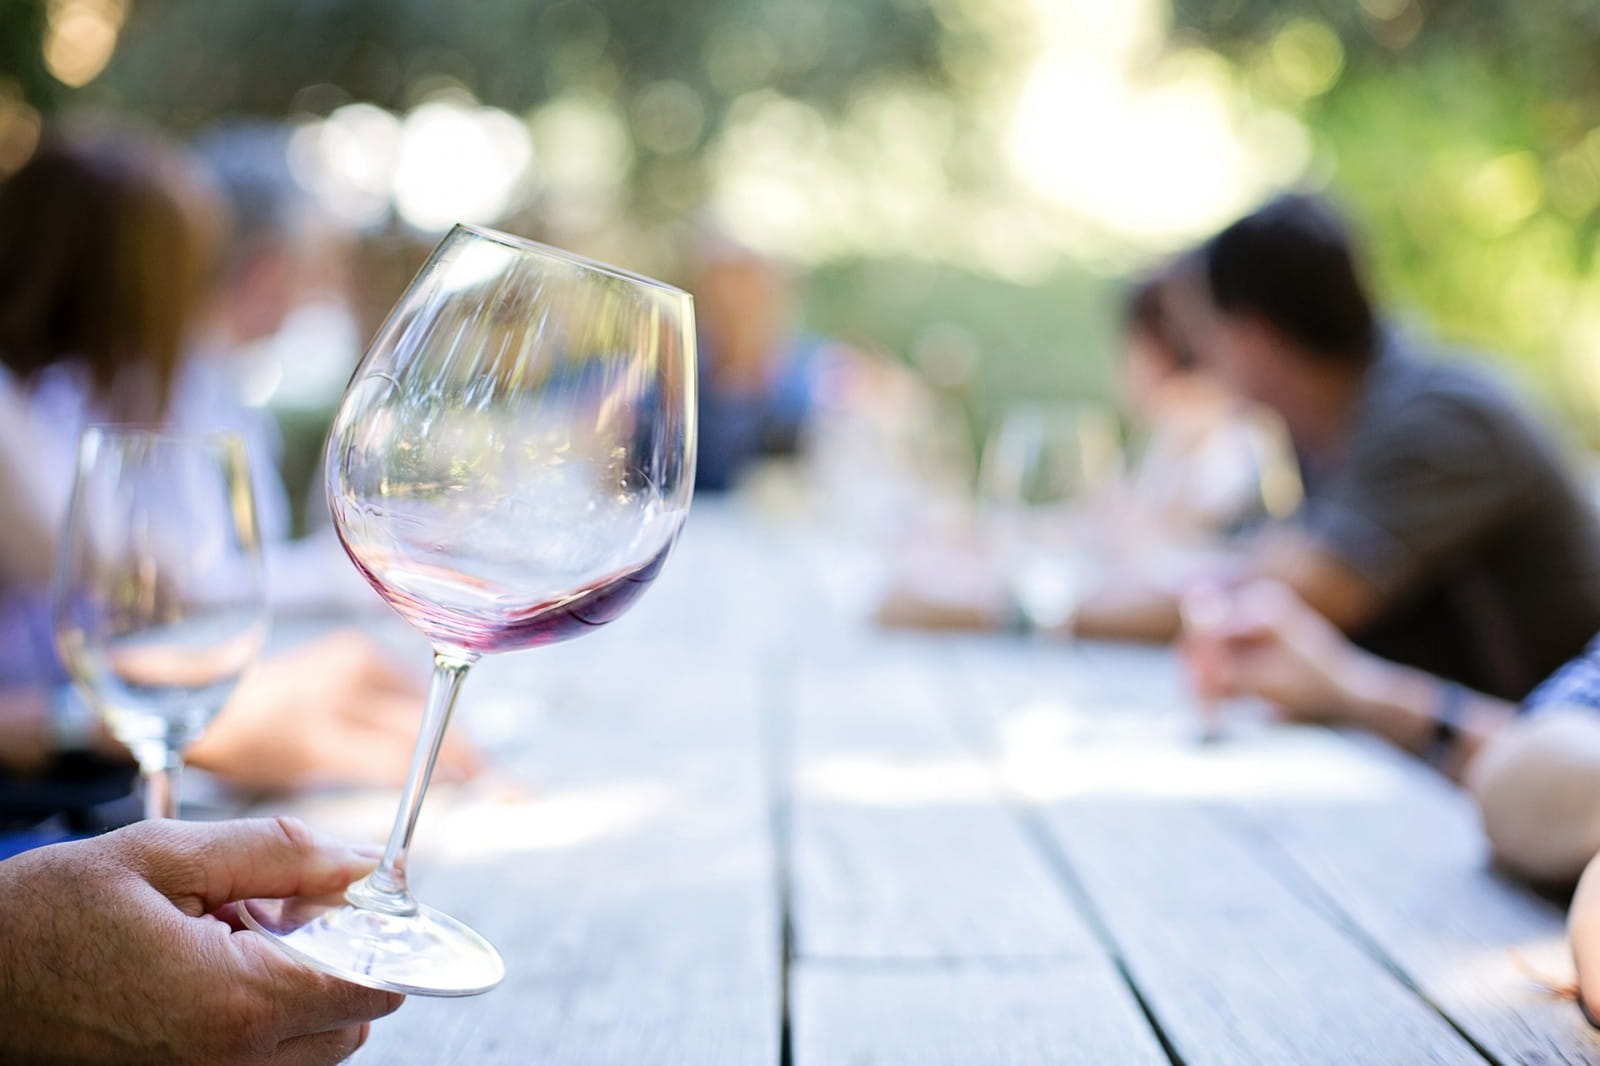 In praise of mindful wine tasting